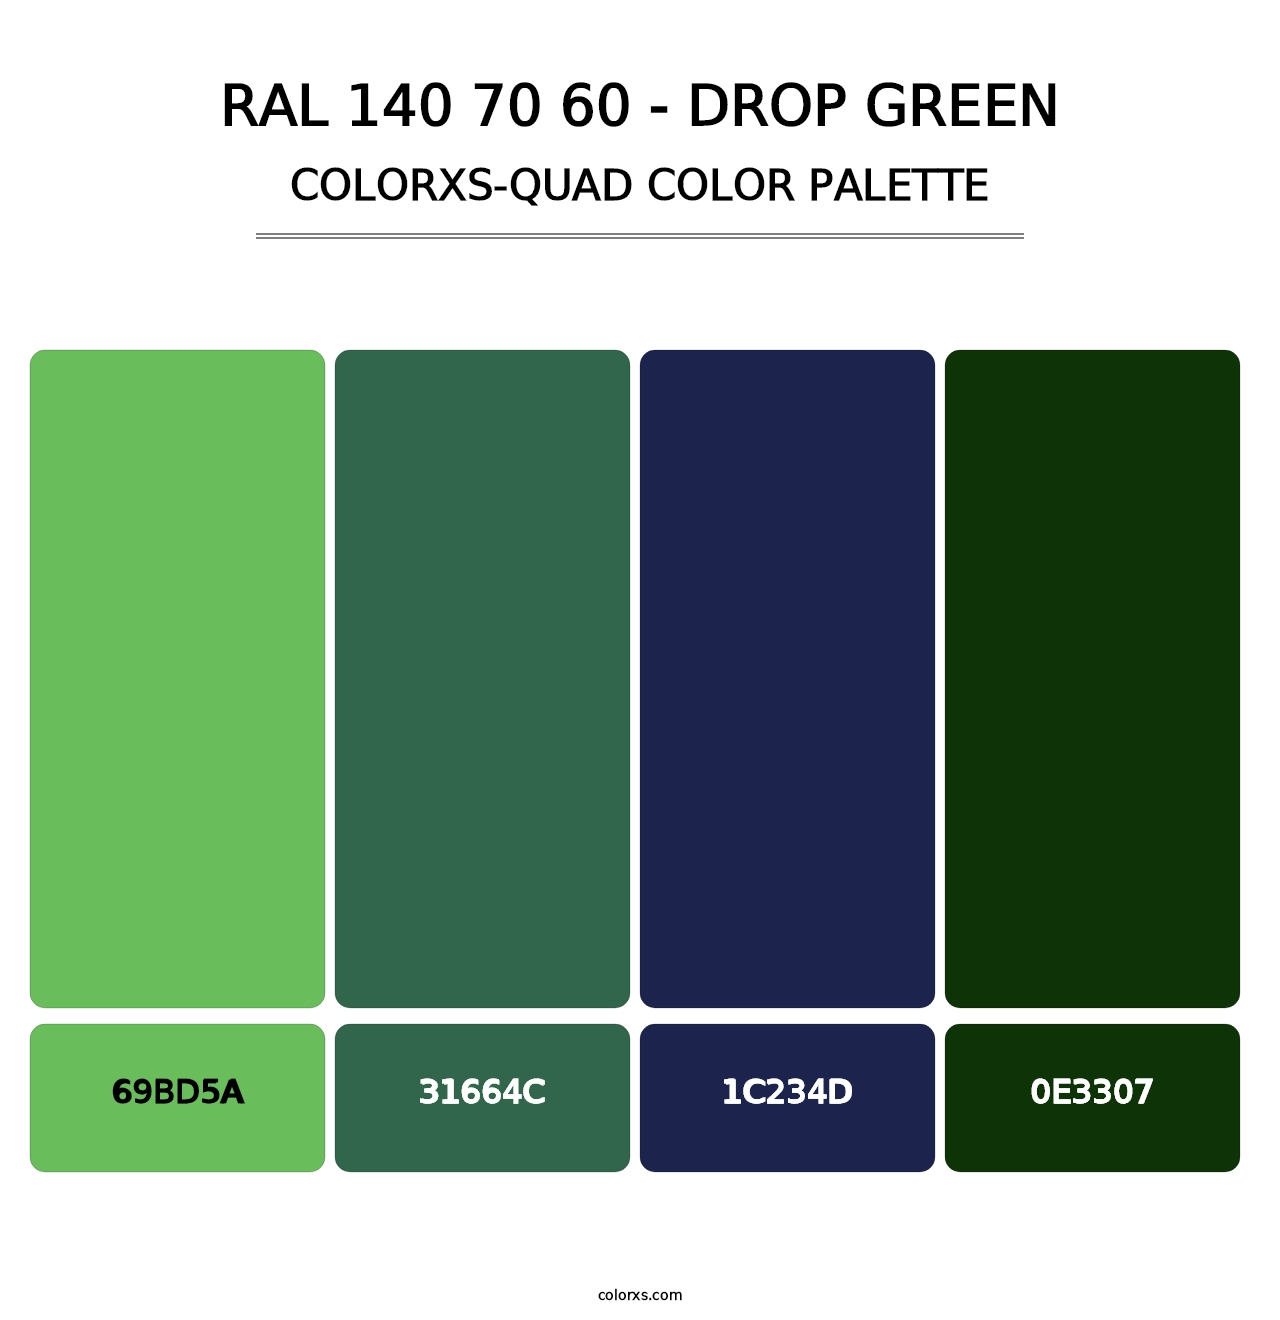 RAL 140 70 60 - Drop Green - Colorxs Quad Palette